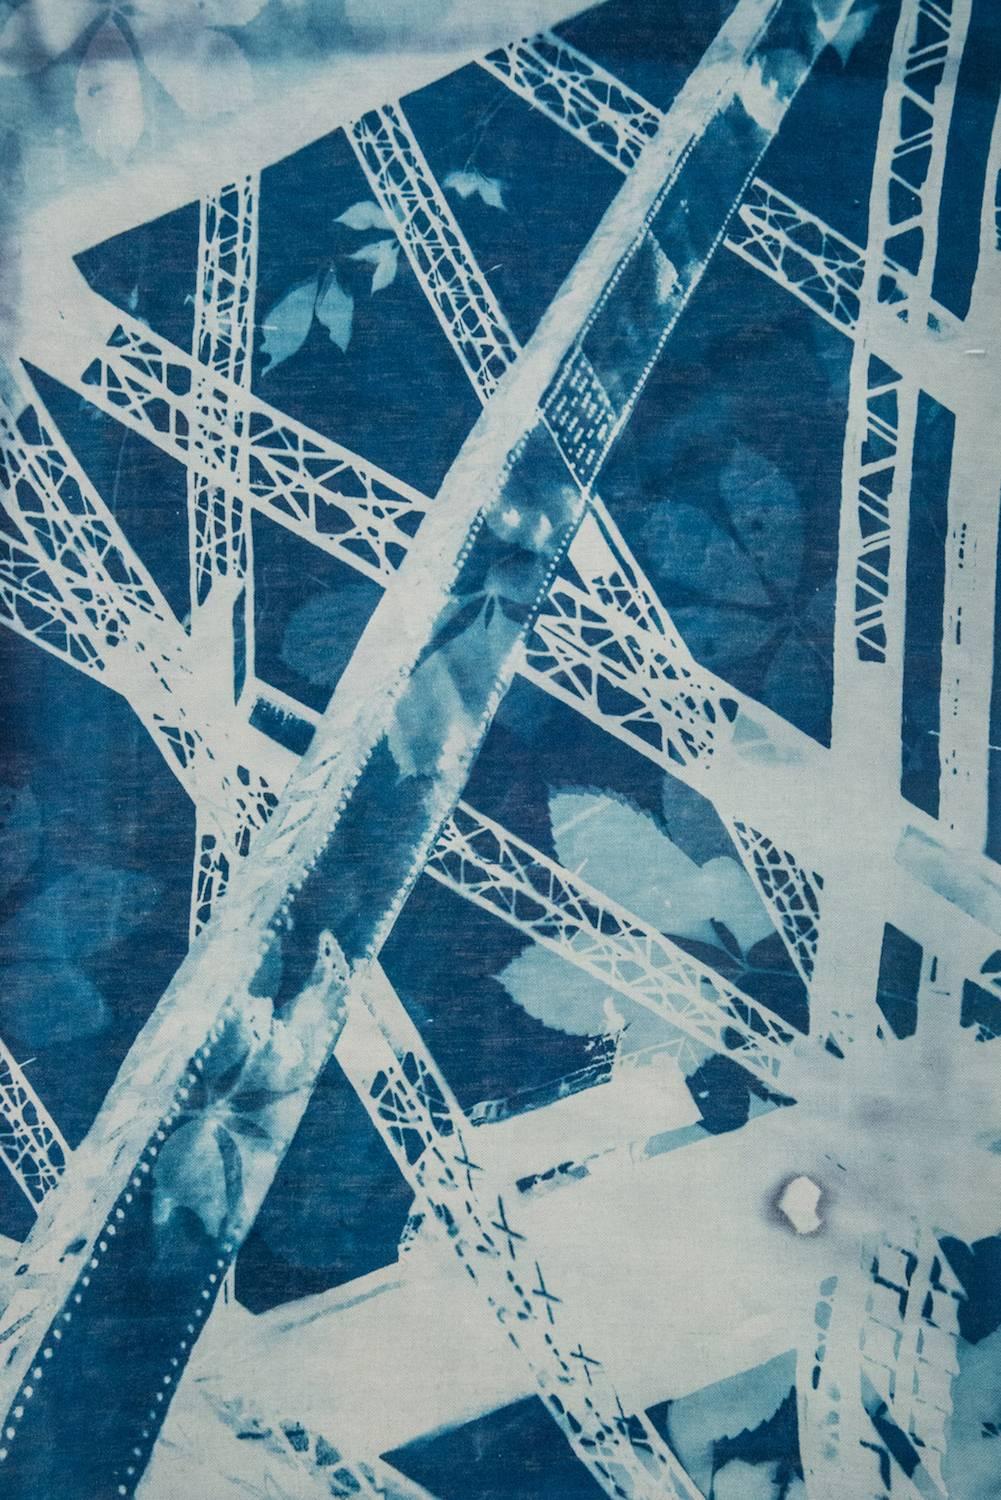 Marie Craig Color Photograph - "Harbor Bridge 3", contemporary, landscape, Sidney, blue, photograph, cyanotype